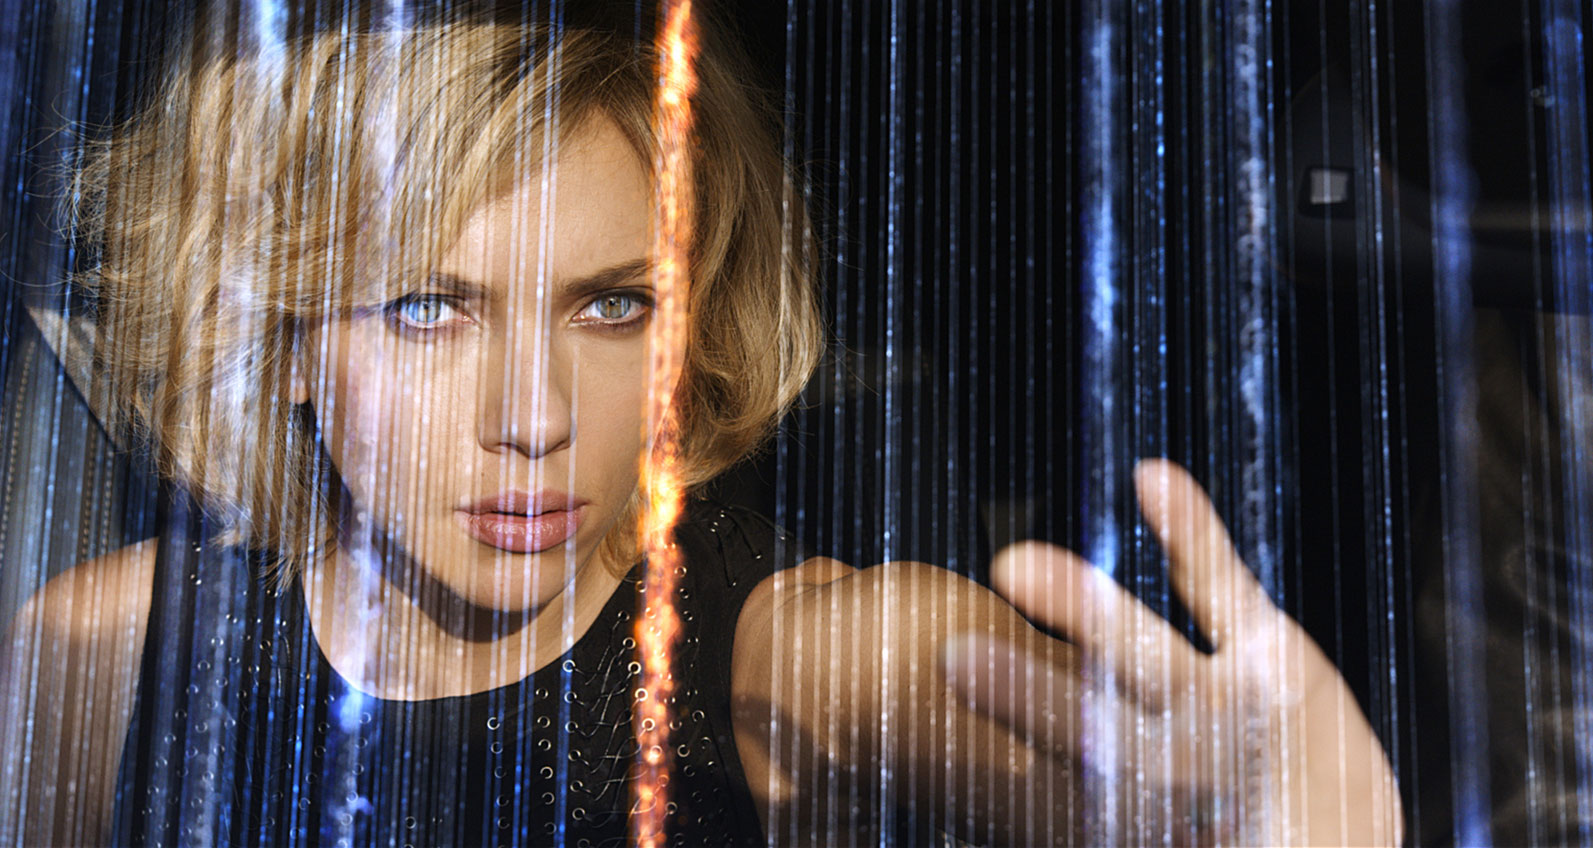 Cinema: “Lucy” testa os limites da evolução em thriller eletrizante